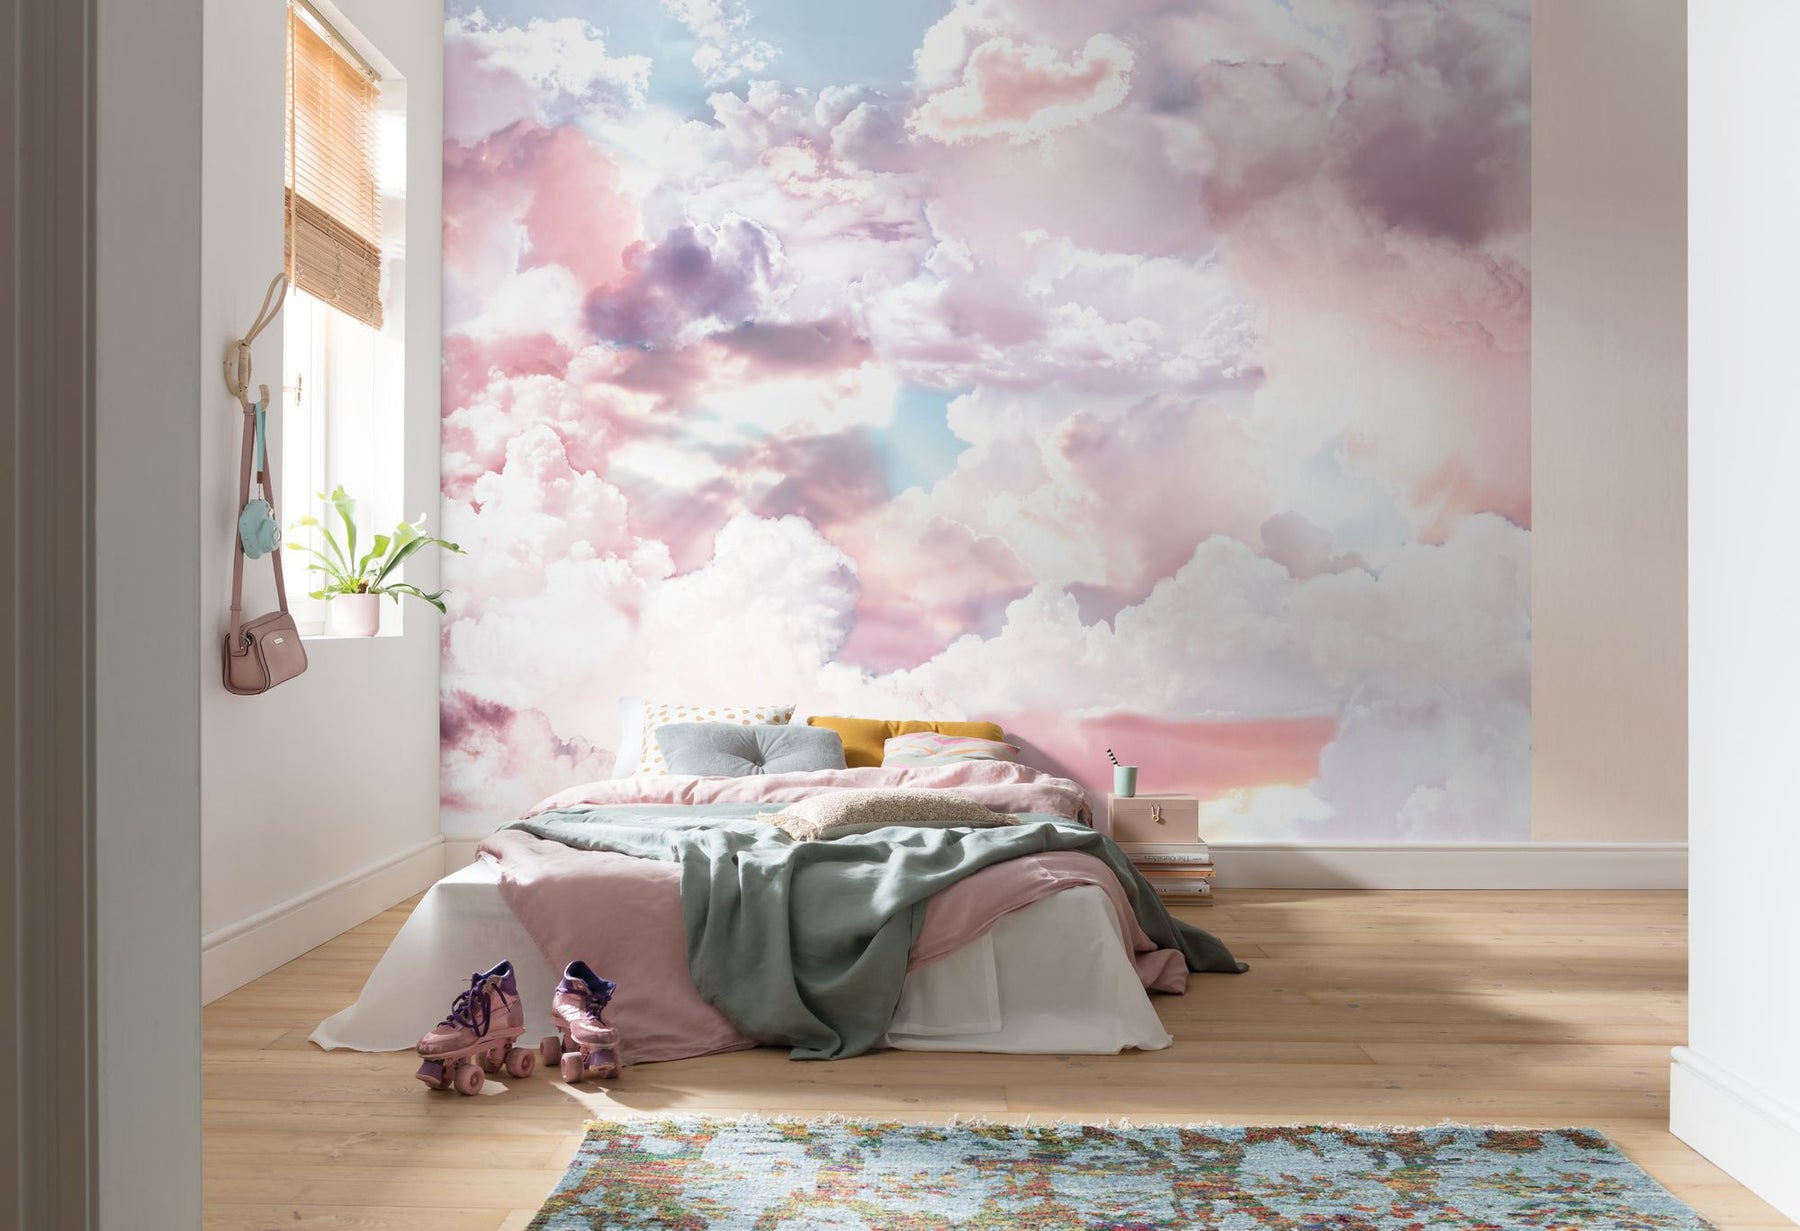 Colorful Cosmic Cloud Wallpaper Mural